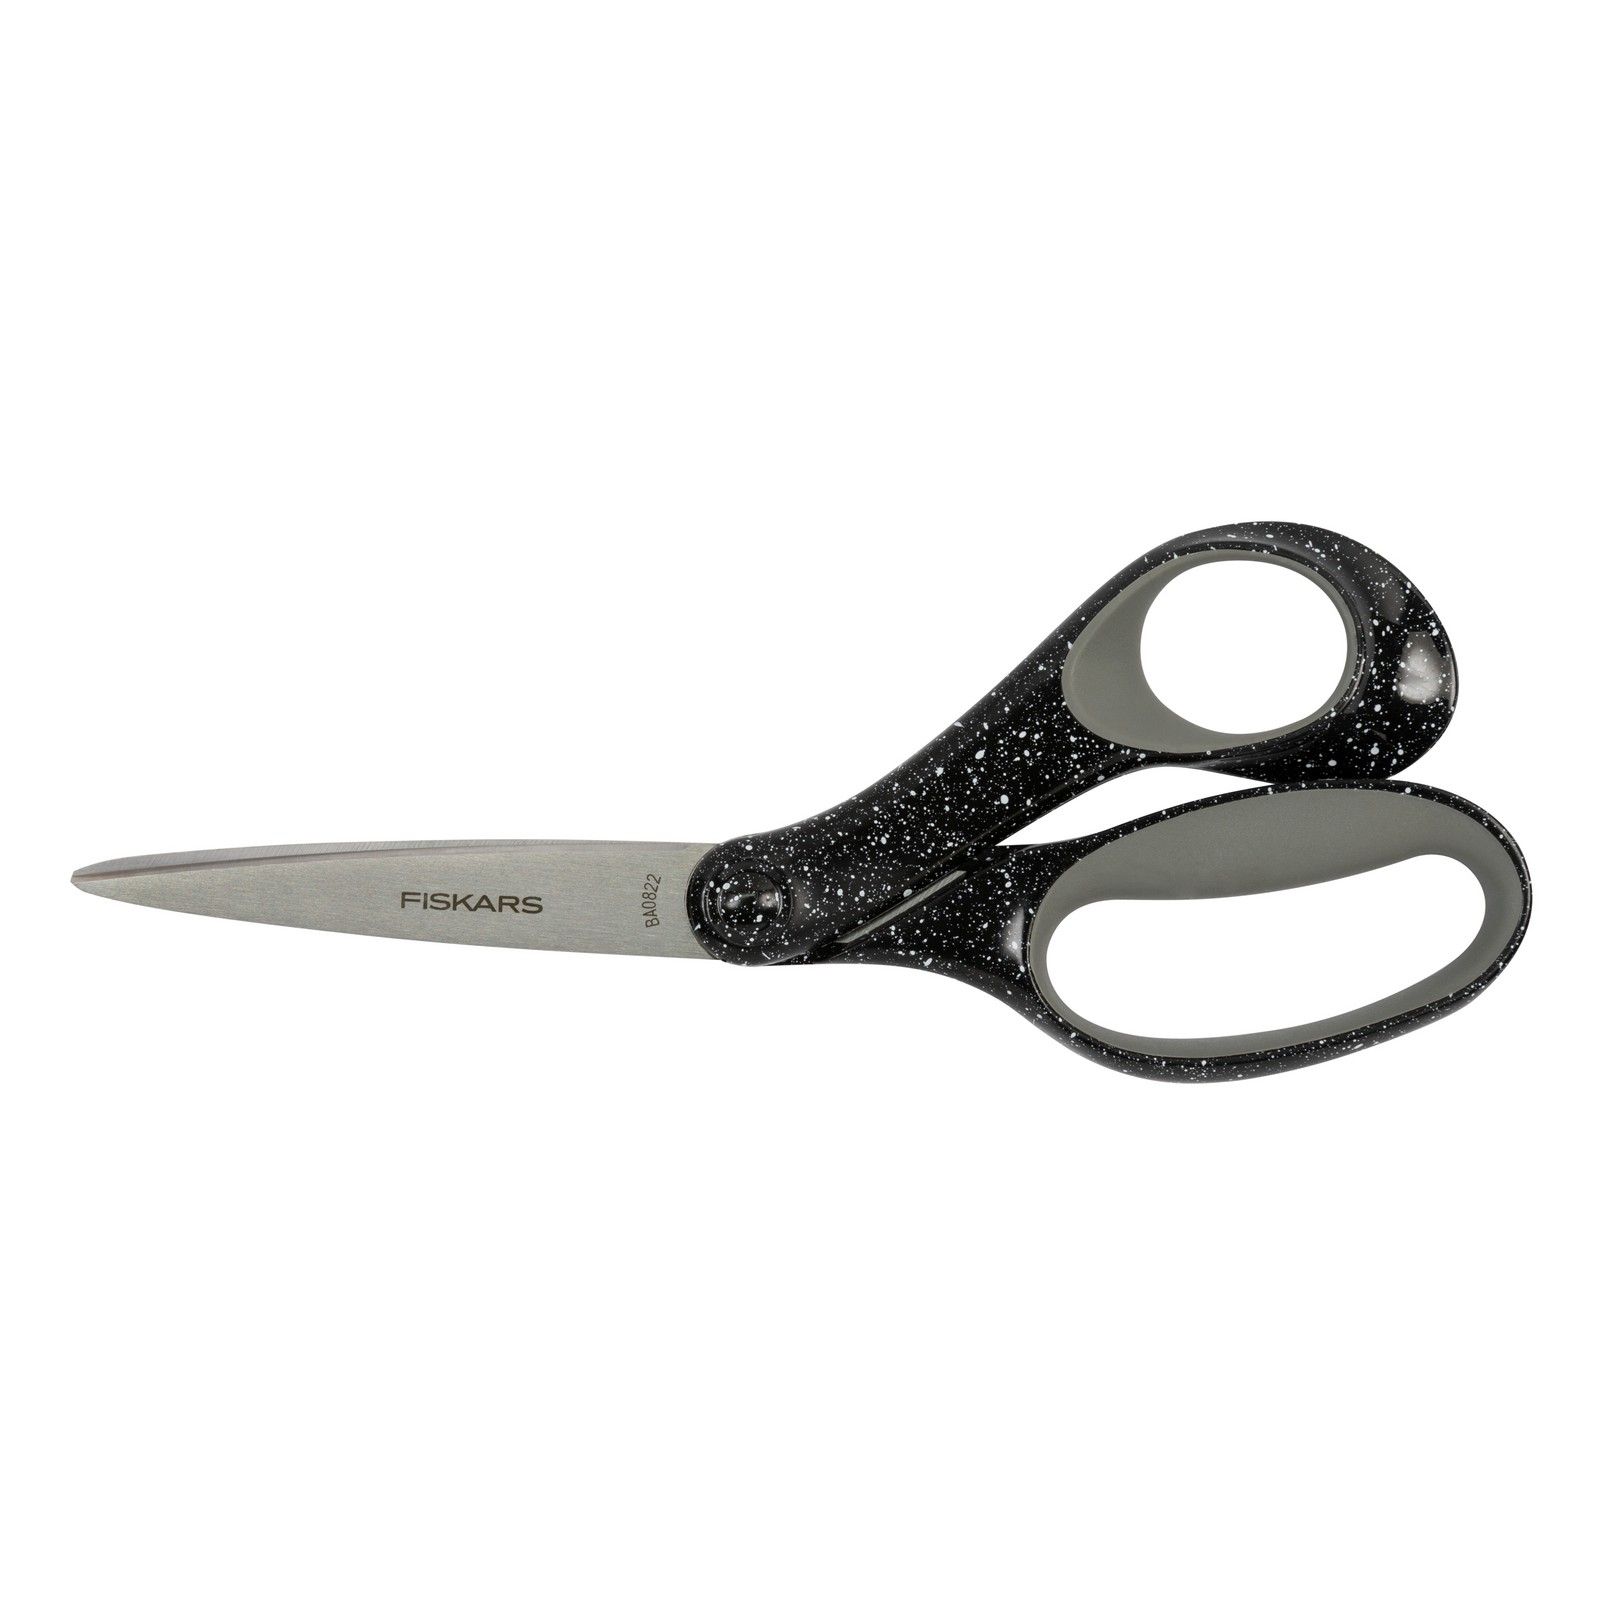 Fiskars • Teen Scissors Speckled Black 20cm for +15 years old